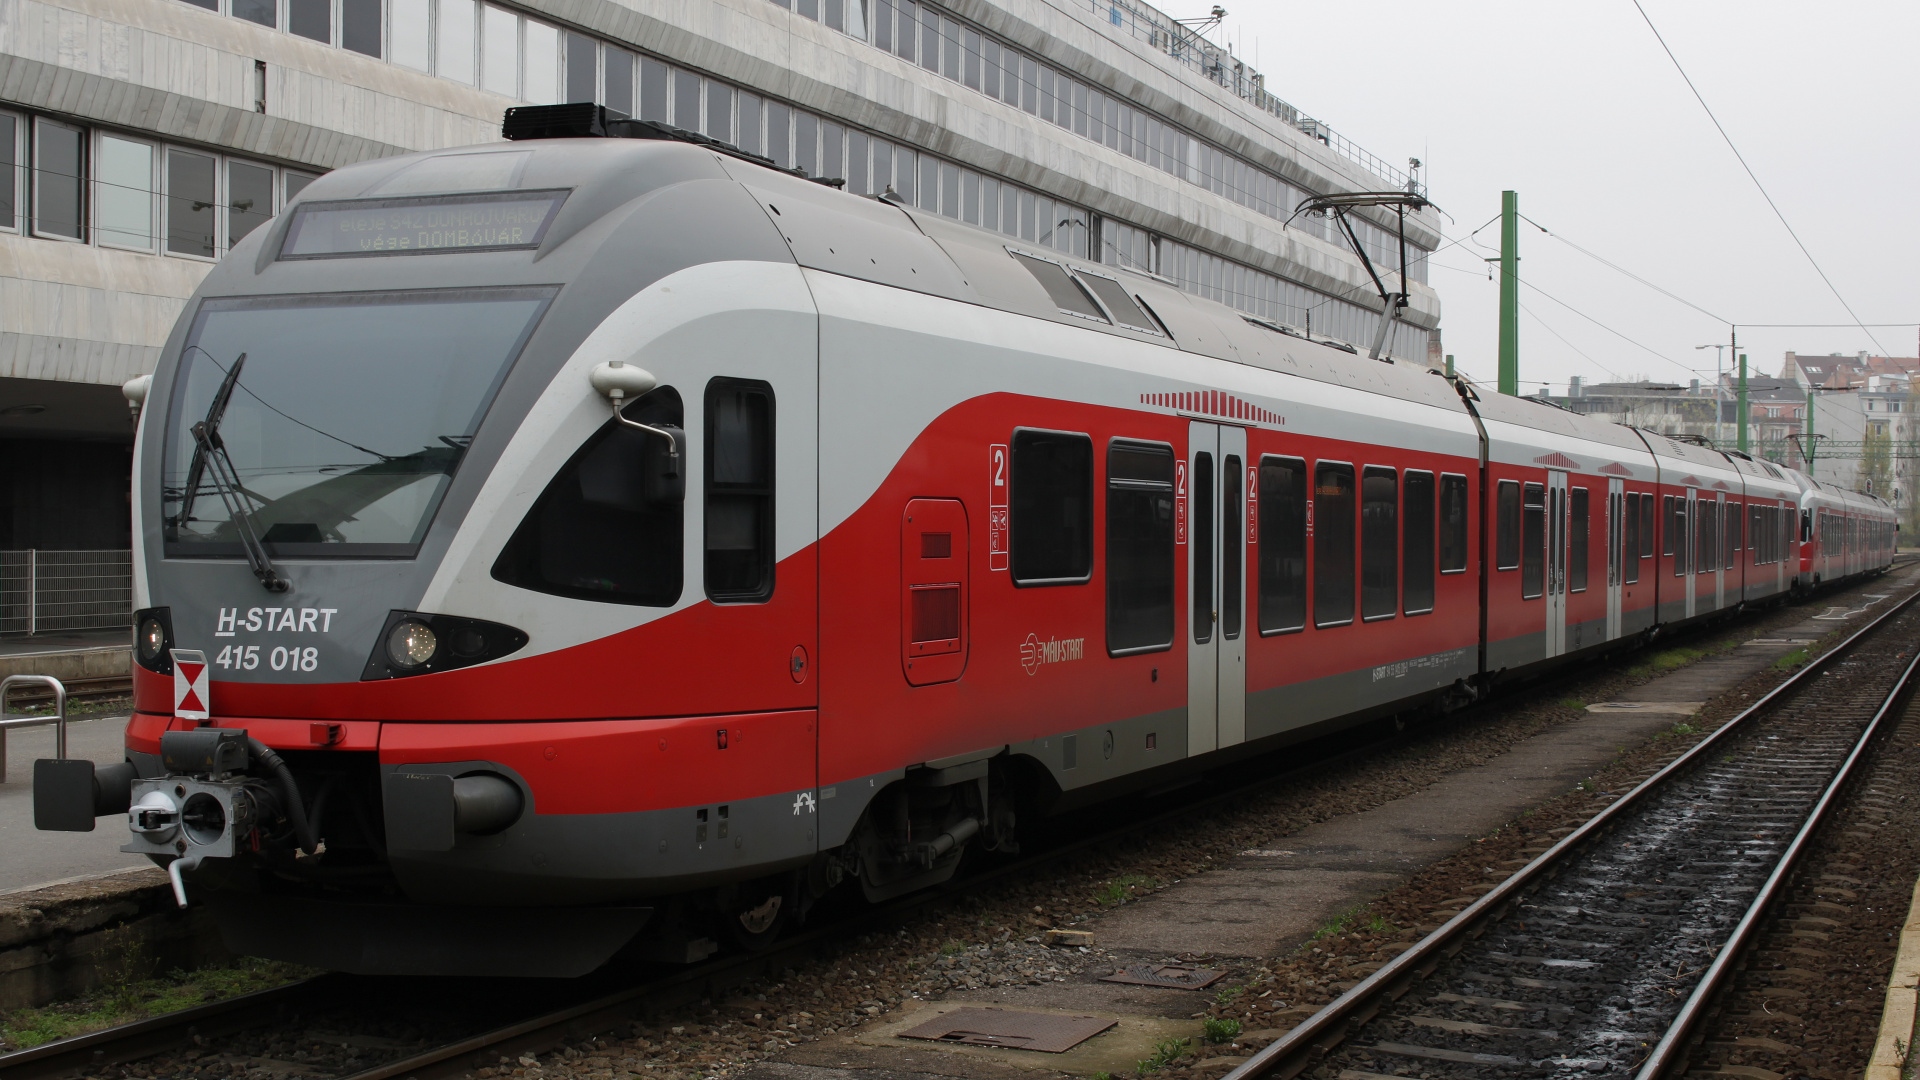 Stadler FLIRT 415 018 (Podróże » Budapeszt » Pojazdy » Pociągi i lokomotywy)